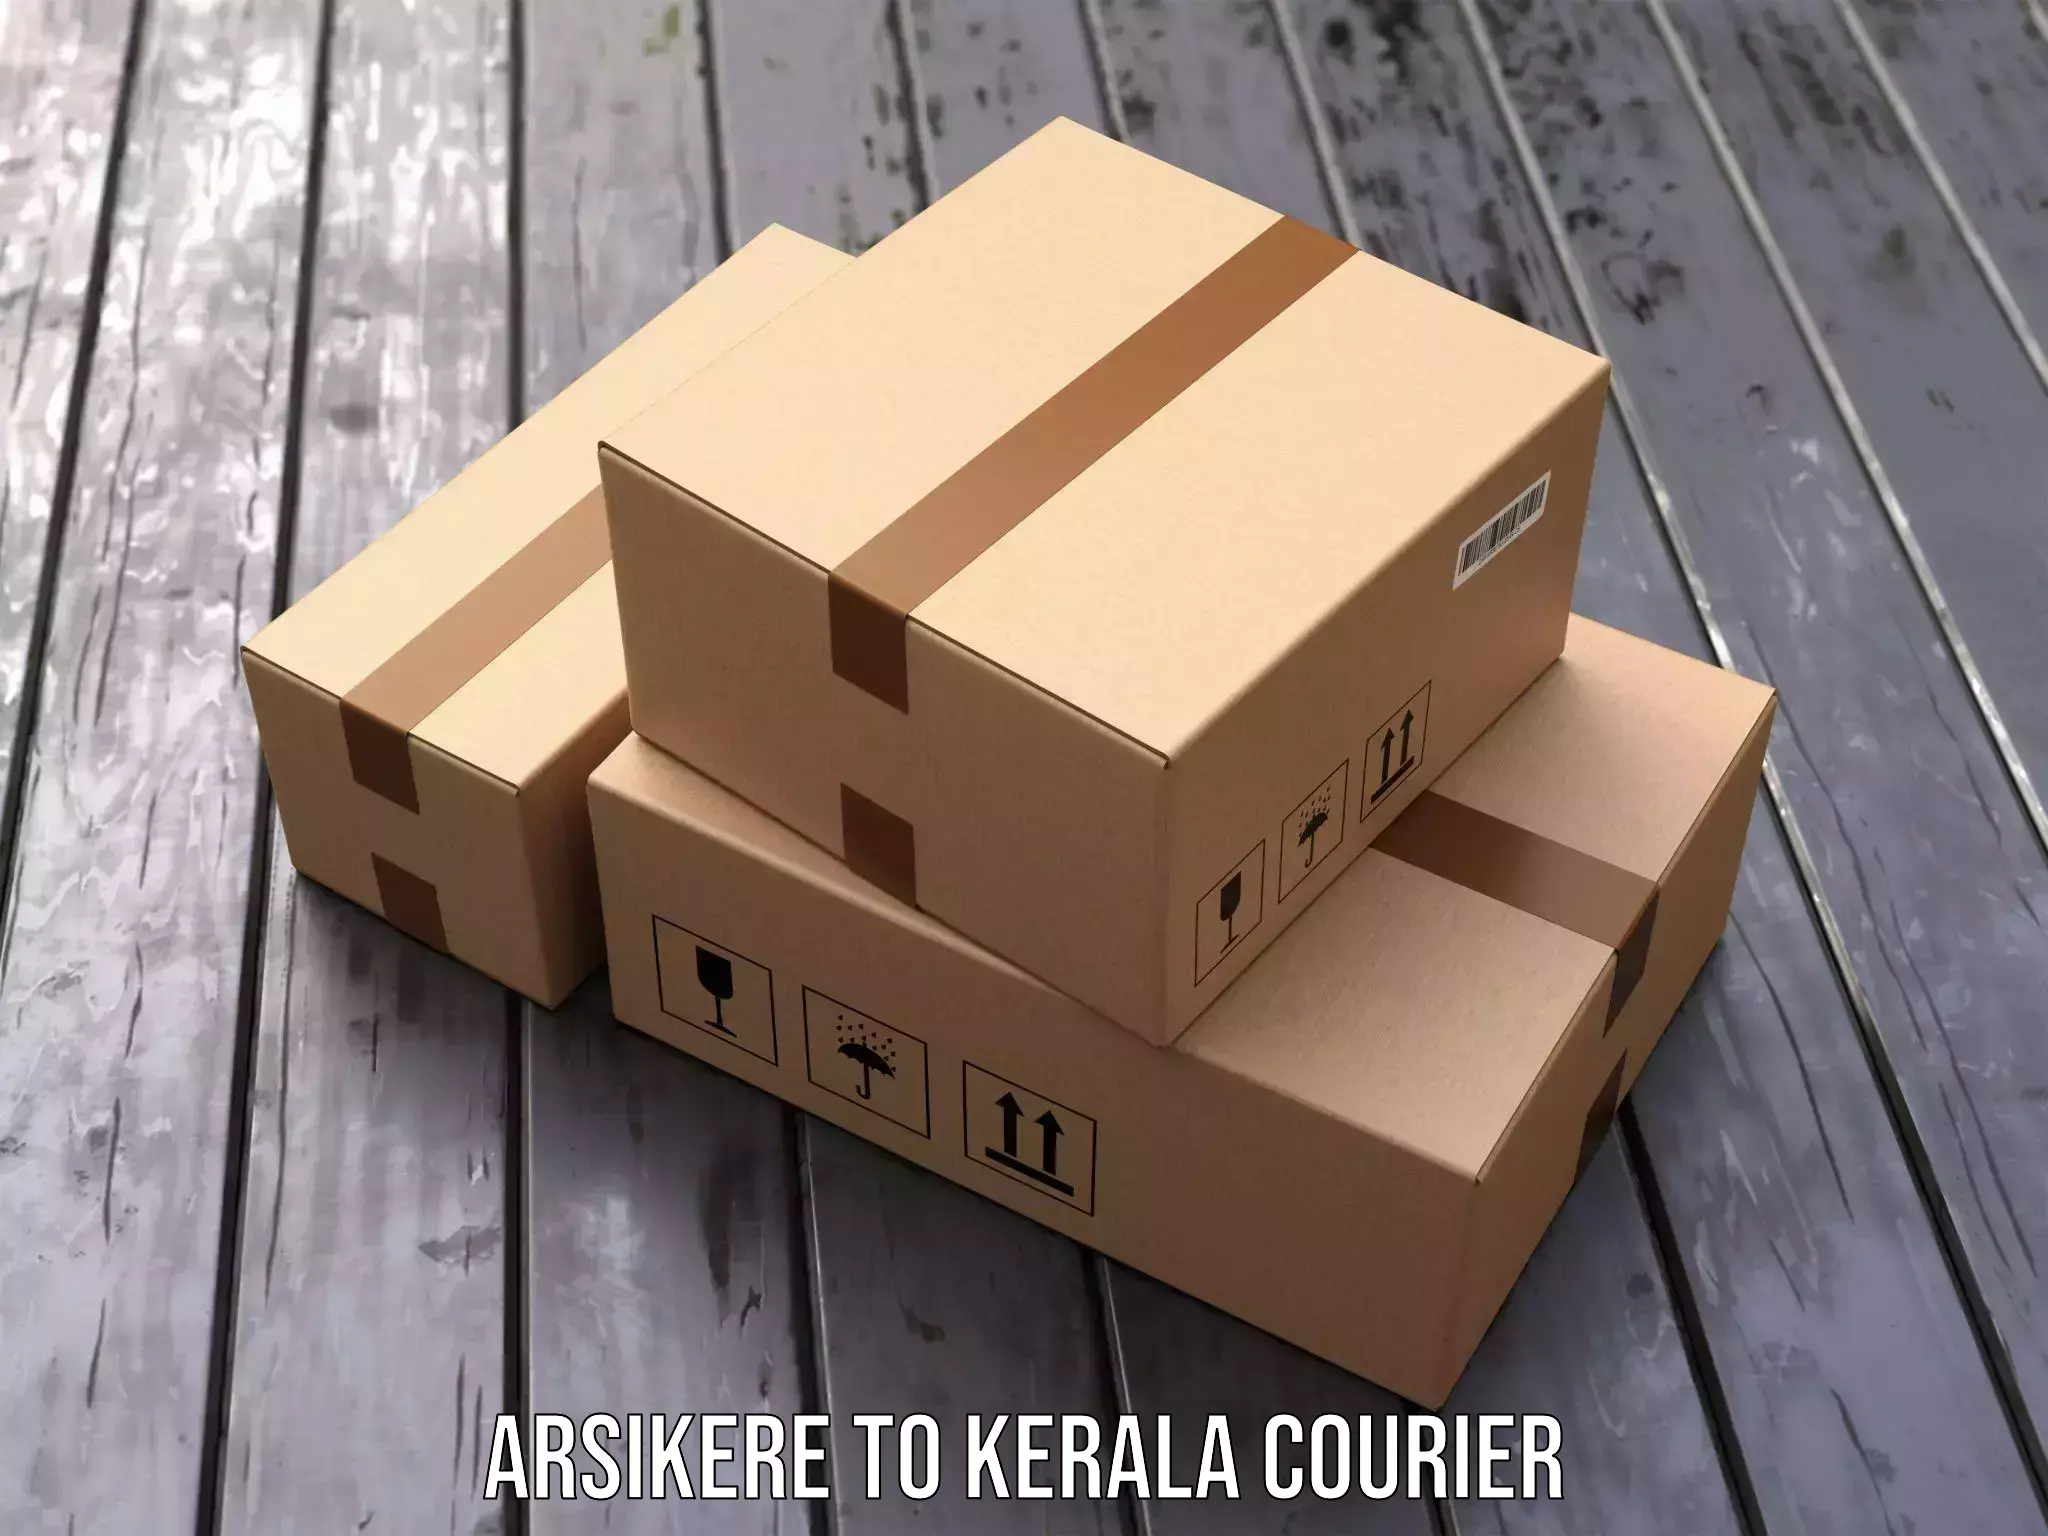 Smart logistics strategies Arsikere to Kerala